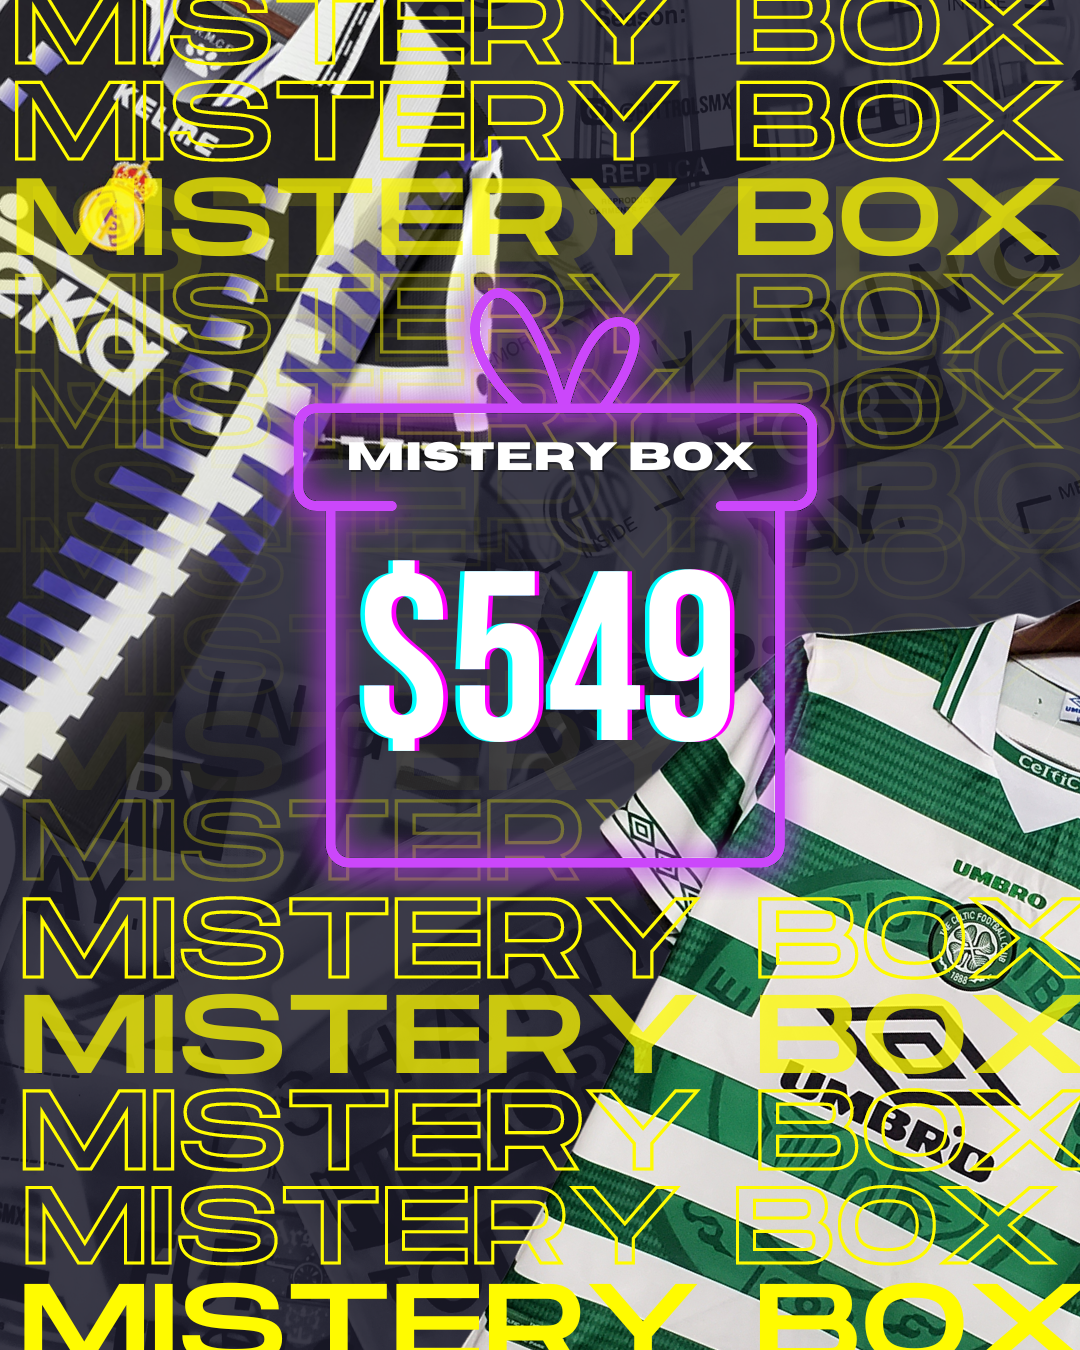 MISTERY BOX $549